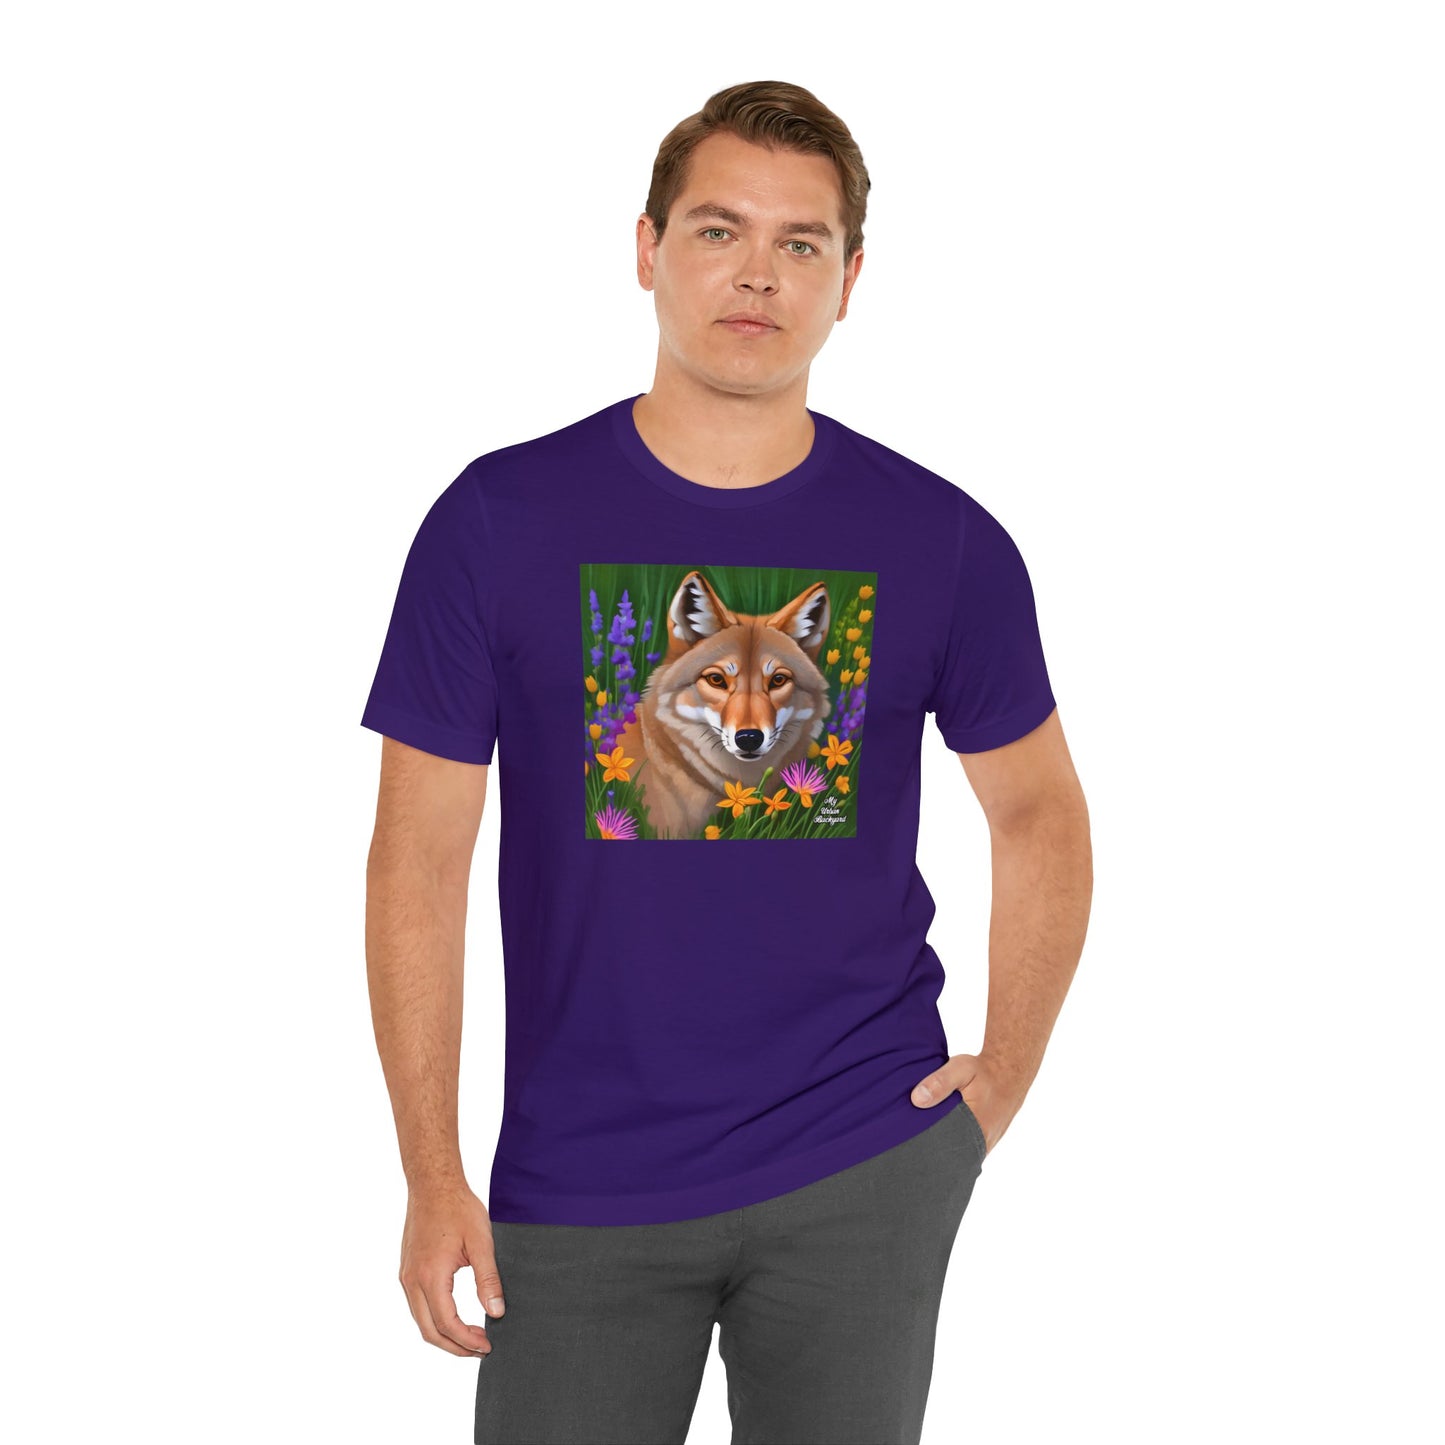 Coyote Portrait, Soft 100% Jersey Cotton T-Shirt, Unisex, Short Sleeve, Retail Fit